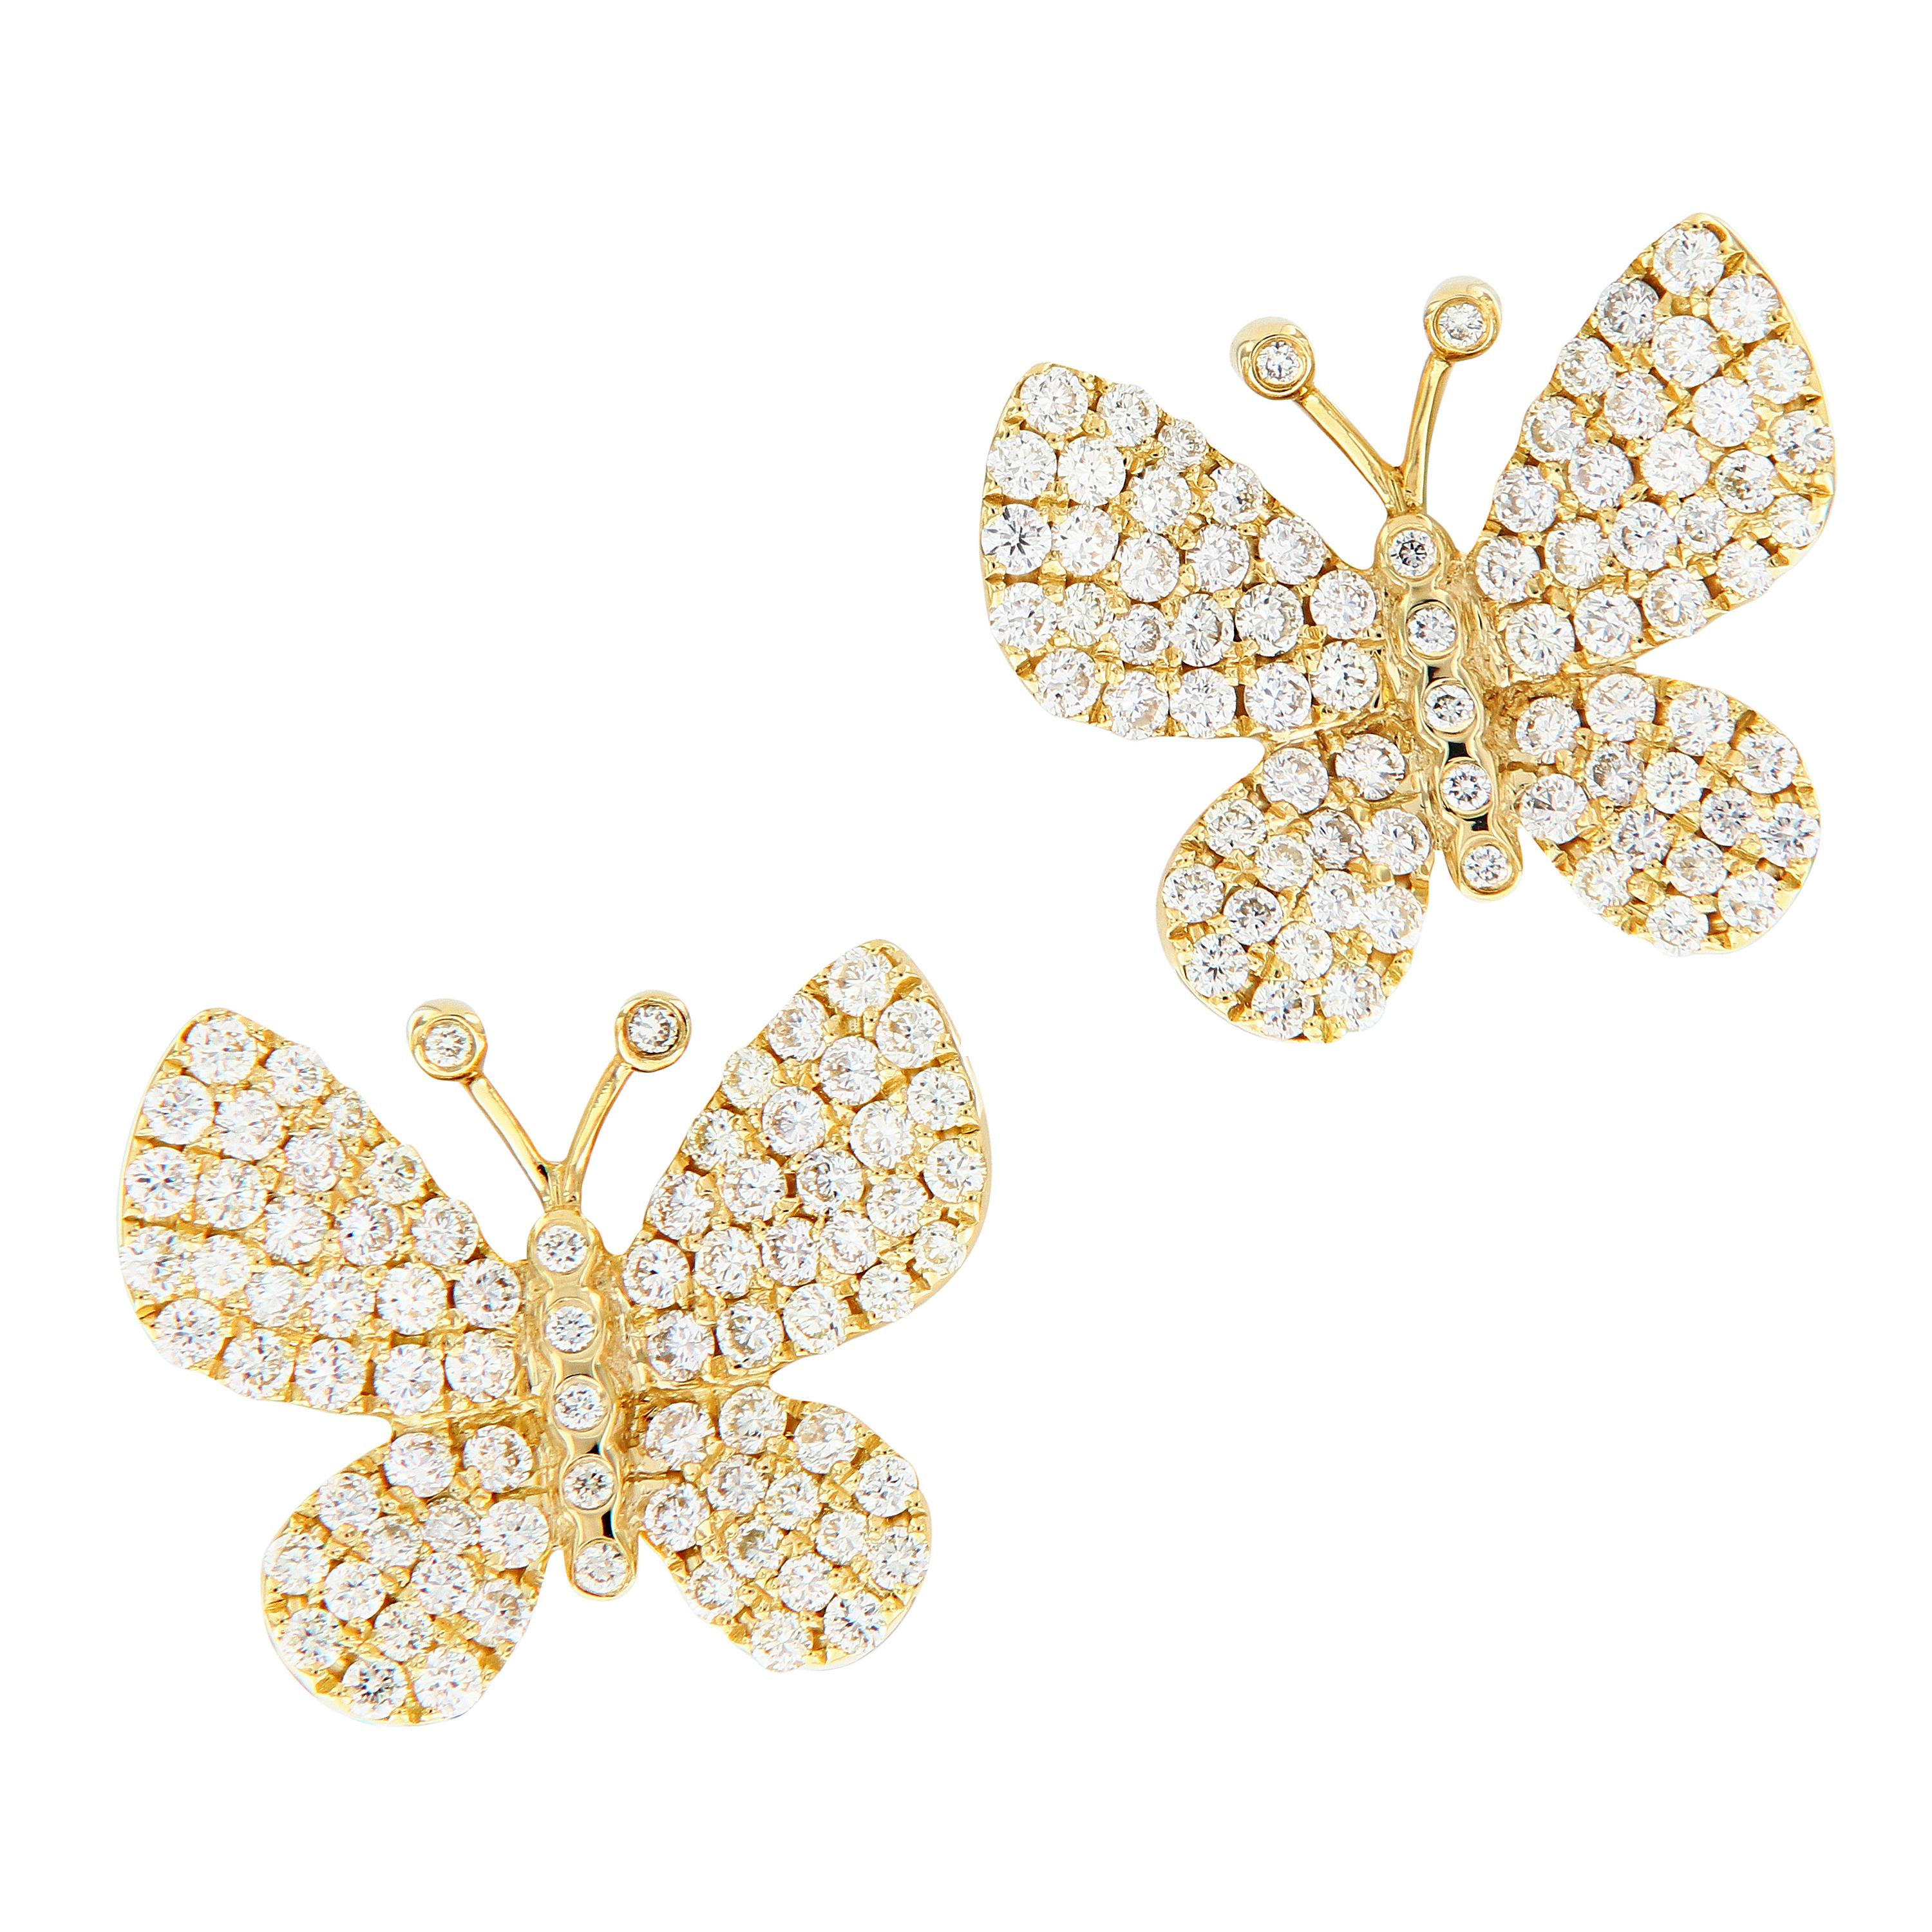 Yellow Gold Diamond Butterfly Stud Earrings